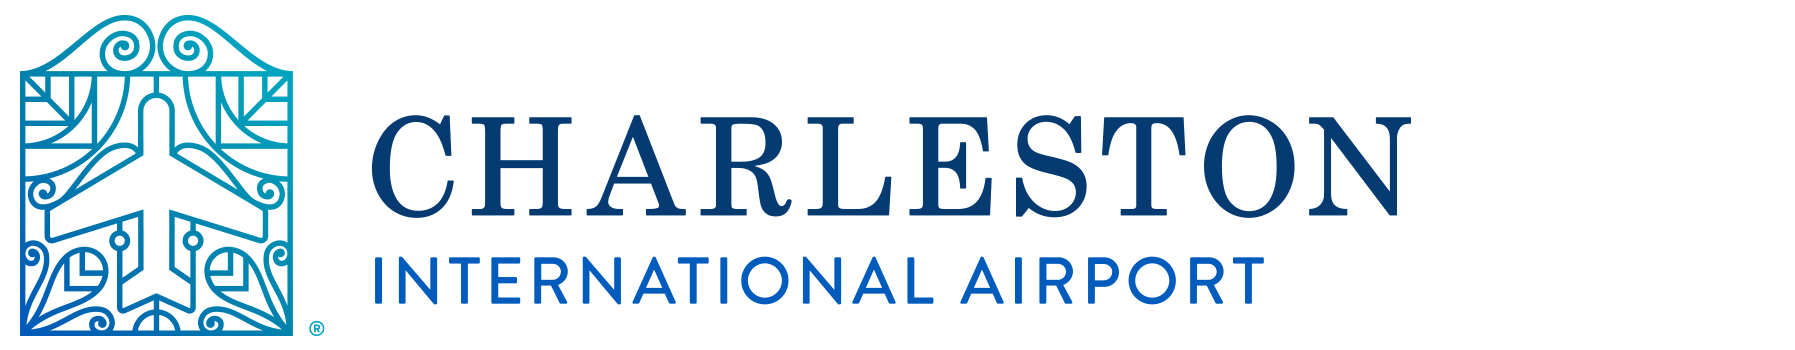 Charleston Logo - Charleston International Airport - Home